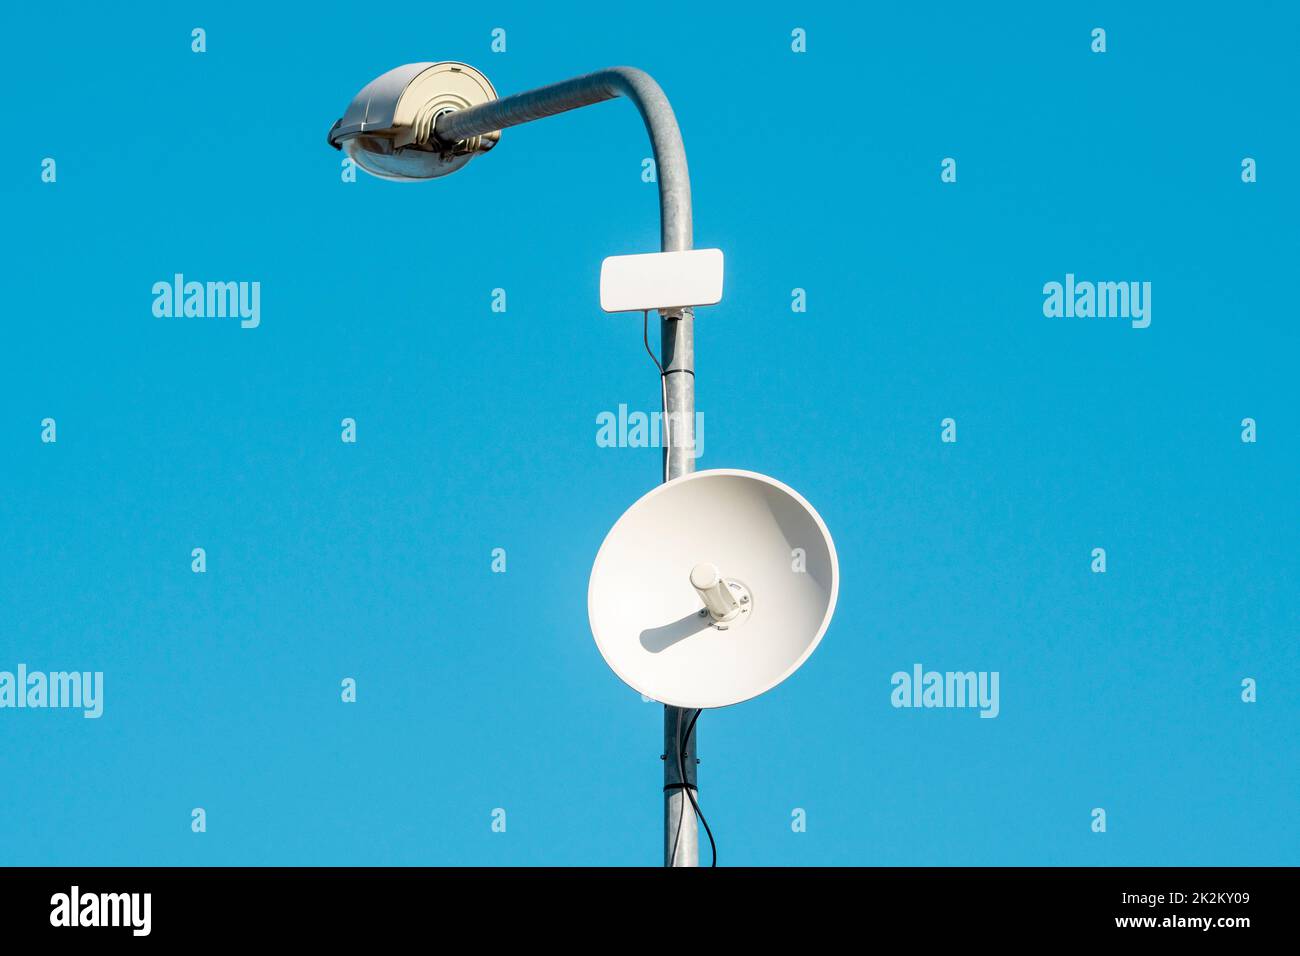 Un poteau lumineux équipé d'un émetteur avec des antennes pour Internet sans fil haut débit Banque D'Images